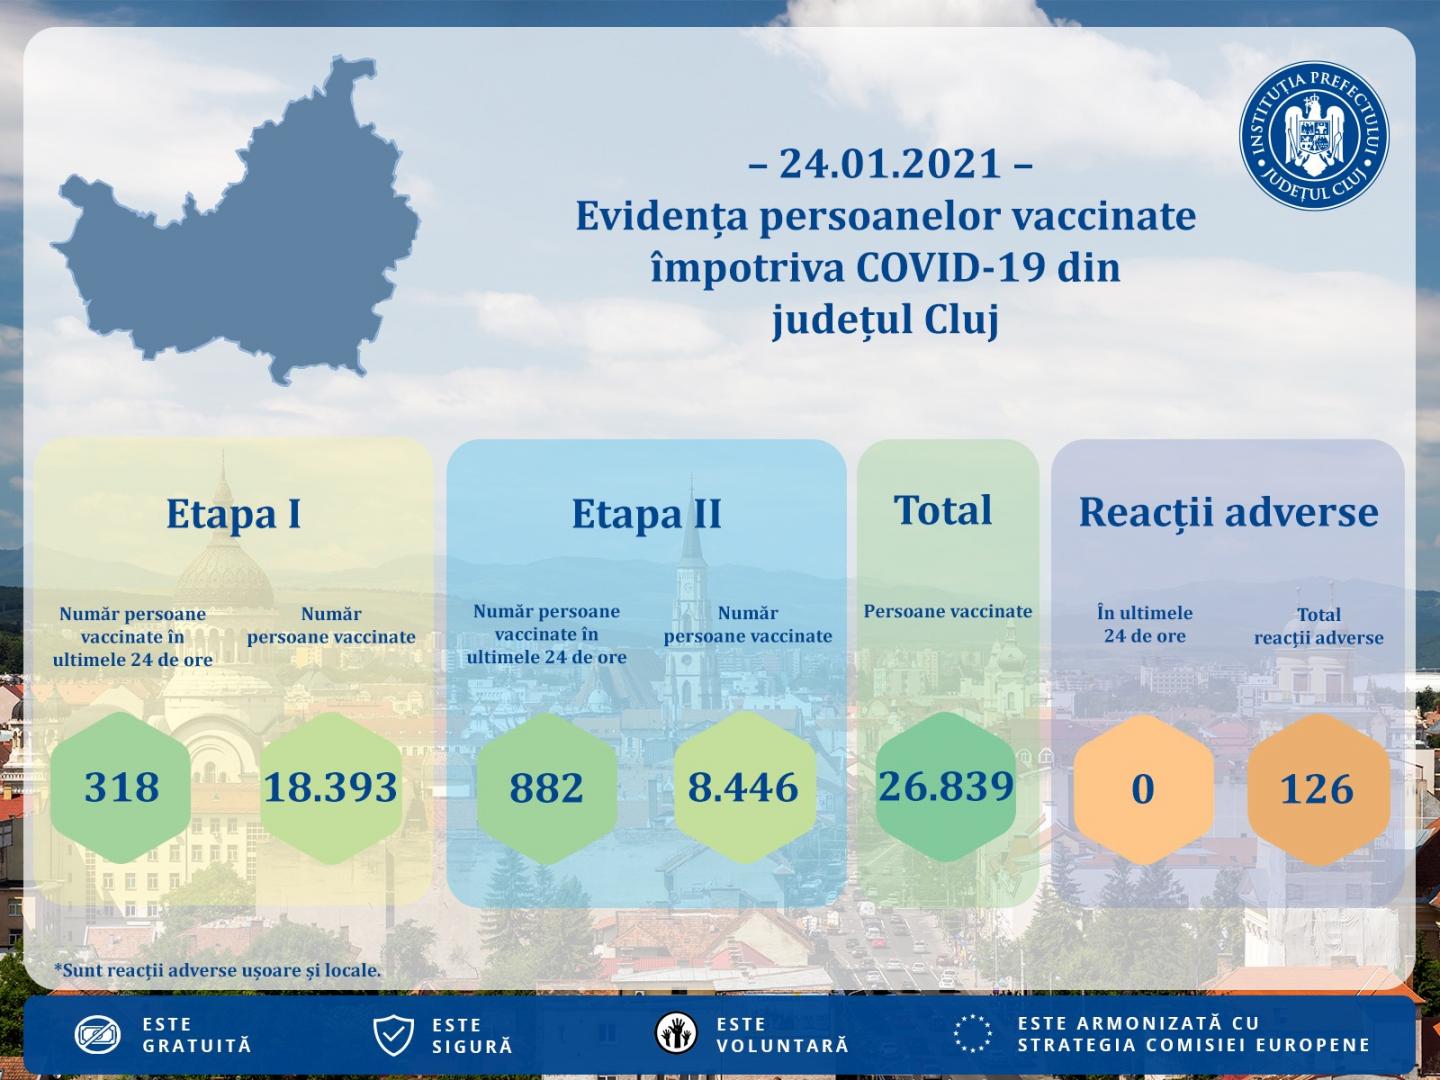 Cluj: 1.200 de persoane vaccinate și zero reacţii adverse, în ultimele 24 de ore